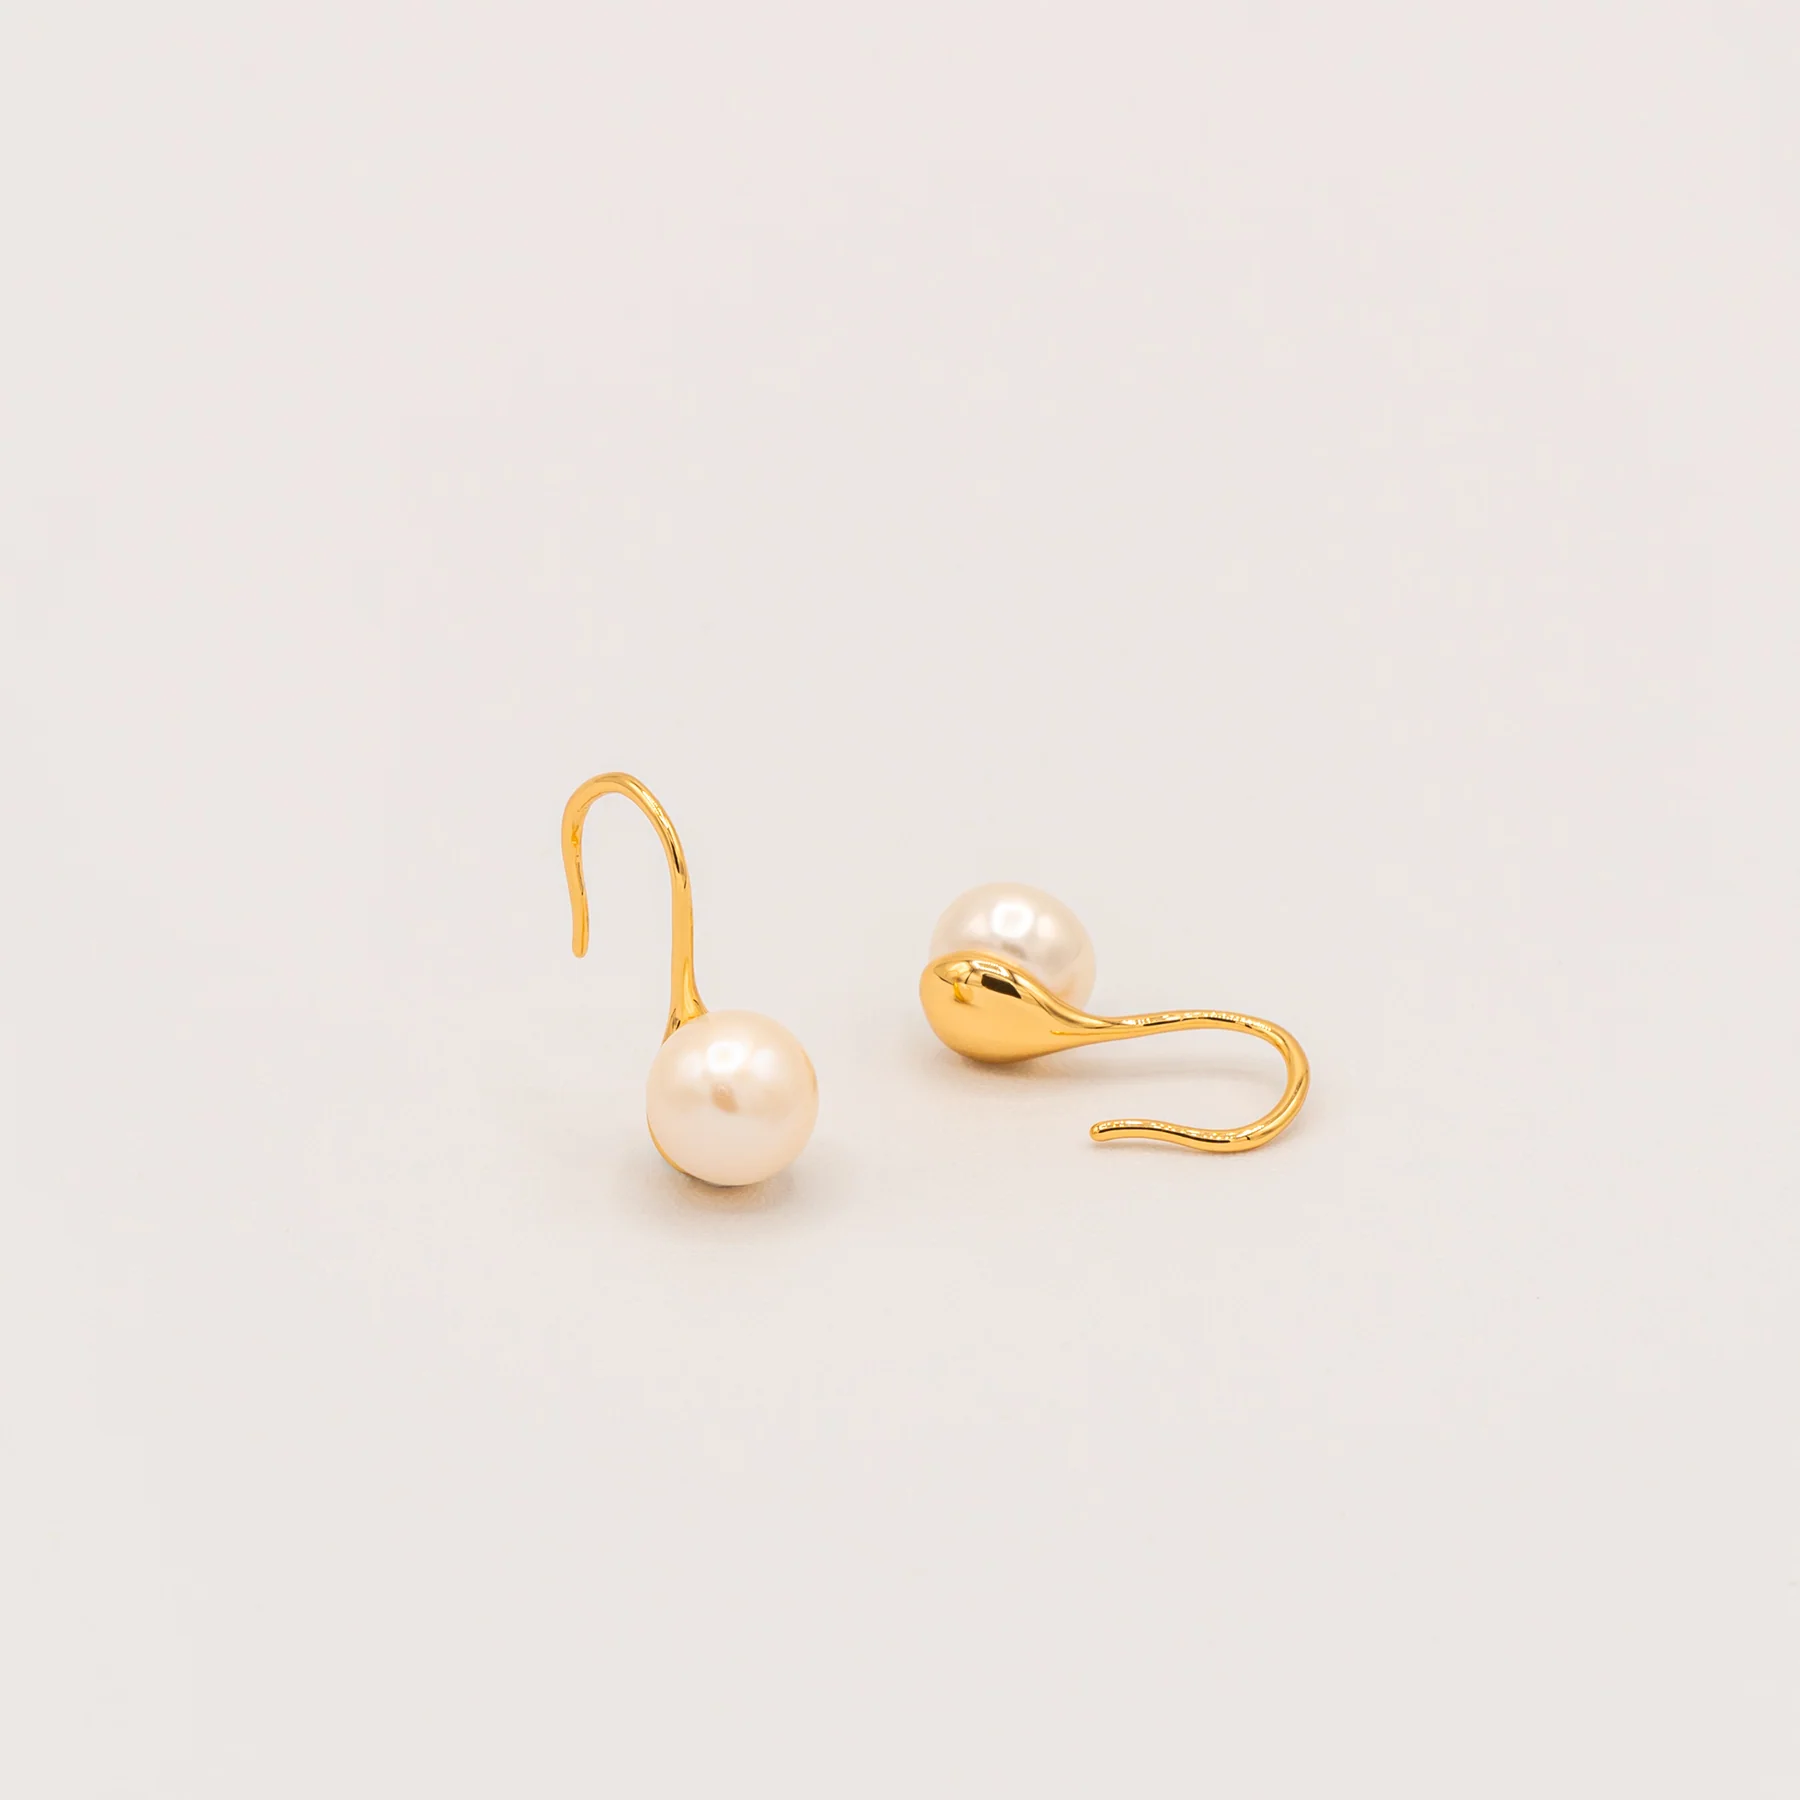 Teardrop Pearl Earrings Product by Jessica Wang